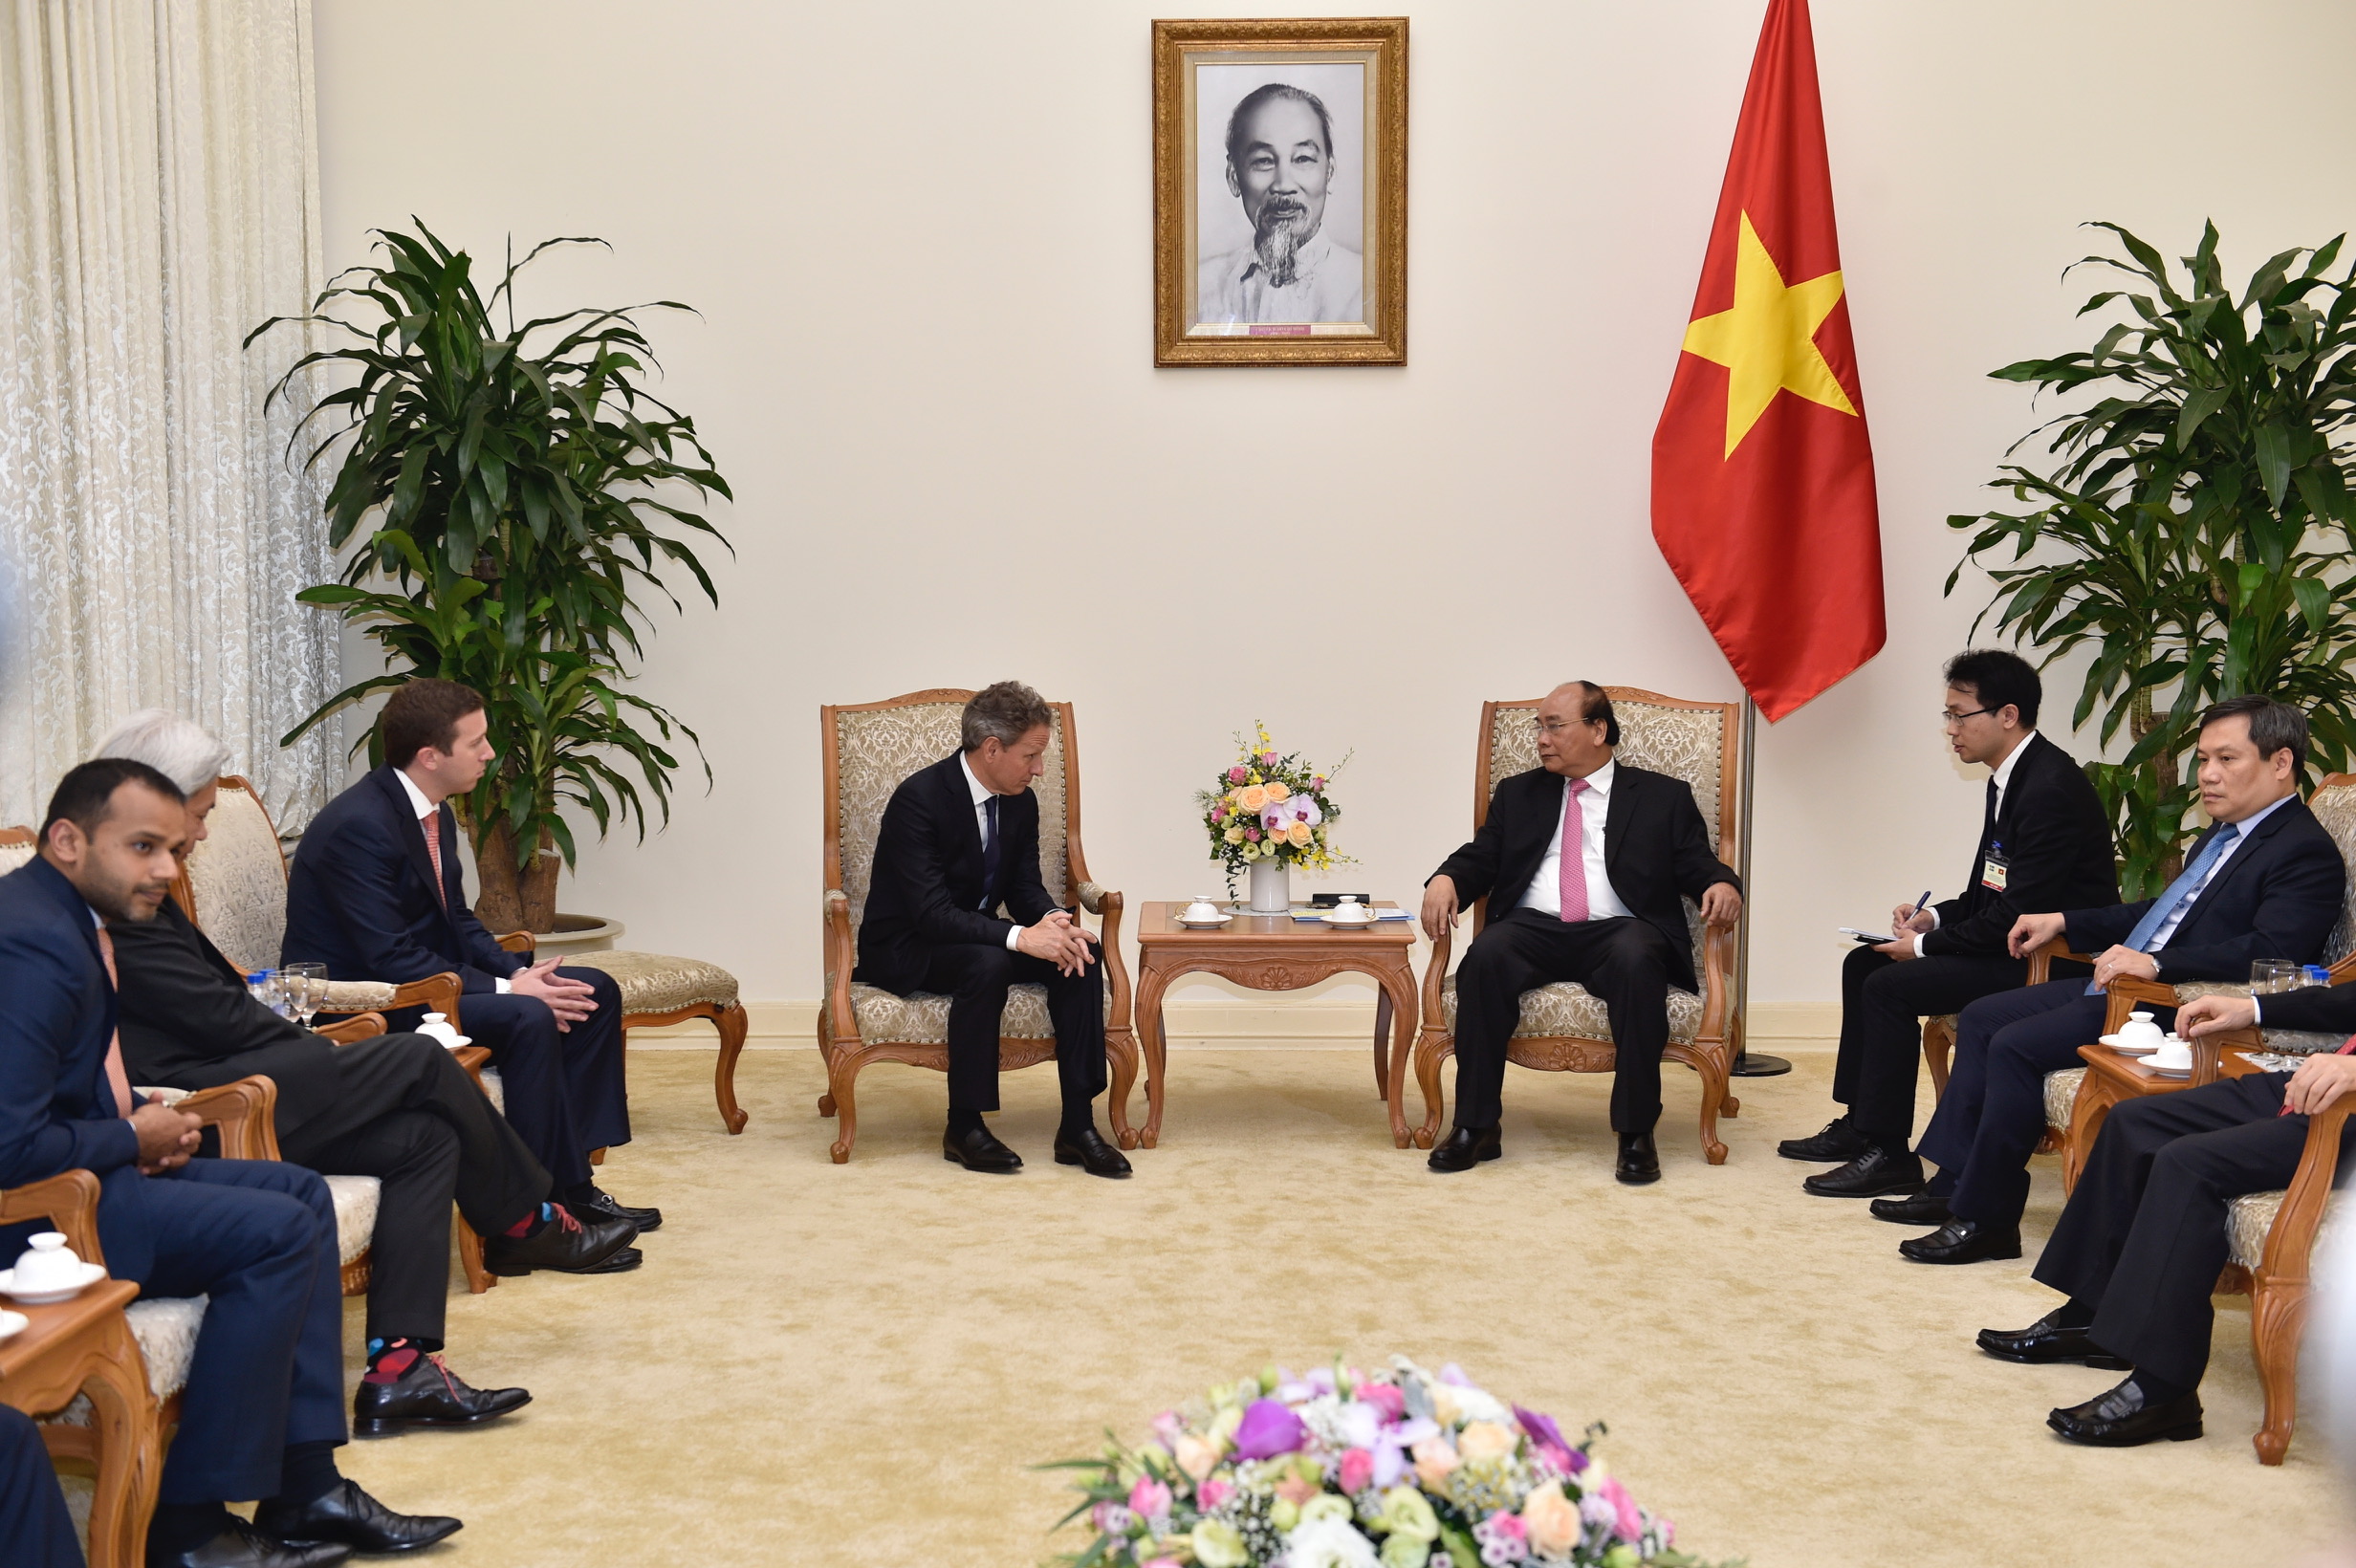 Thủ tướng khẳng định tạo điều kiện thuận lợi cho doanh nghiệp Hoa Kỳ đầu tư tại Việt Nam